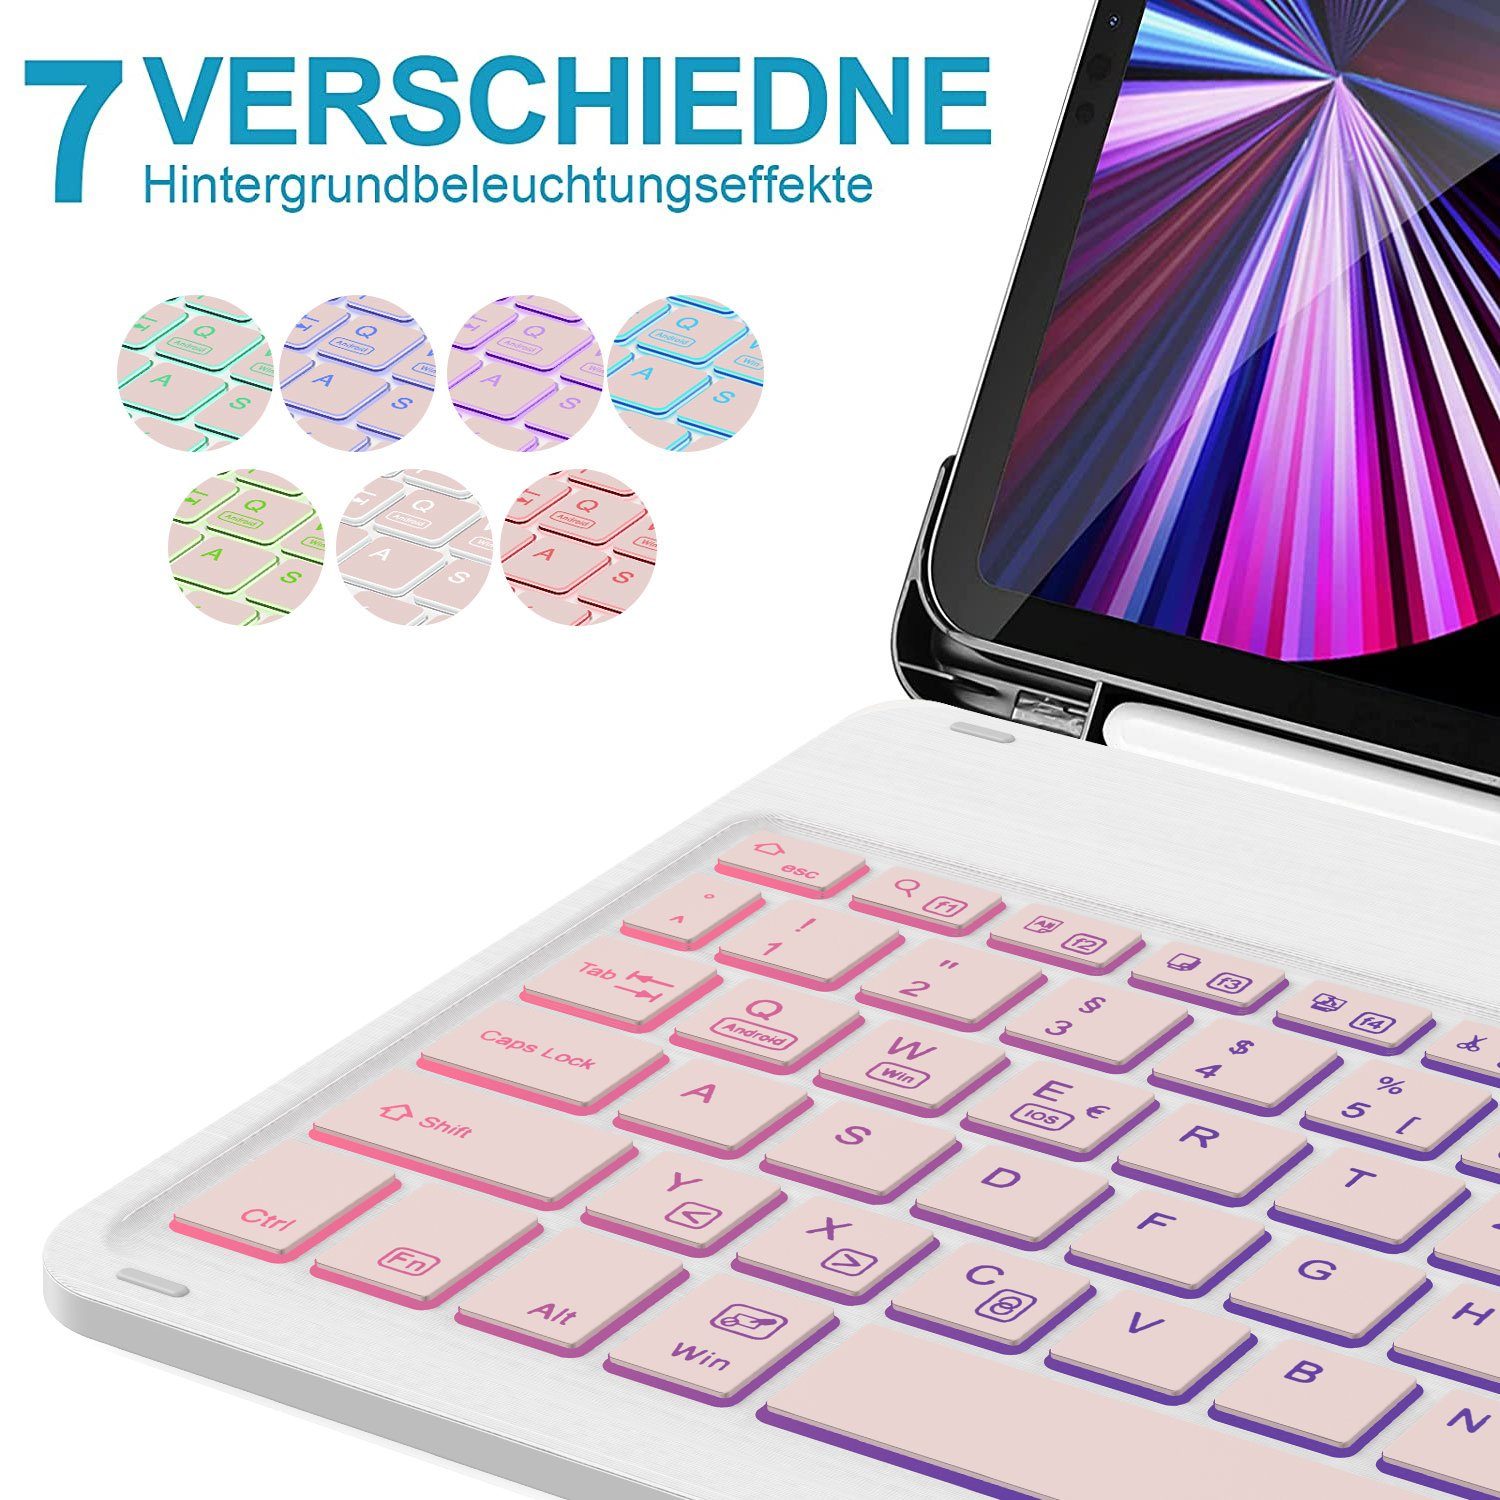 Mutoy Tastatur Hülle iPad 2022/2021/2020 Kabellose iPad-Tastatur für & Pro Air iPad 5/Air 11 (Roségold, 4 QWERTZ-Layout) Beleuchtete Tastatur, Deutsches